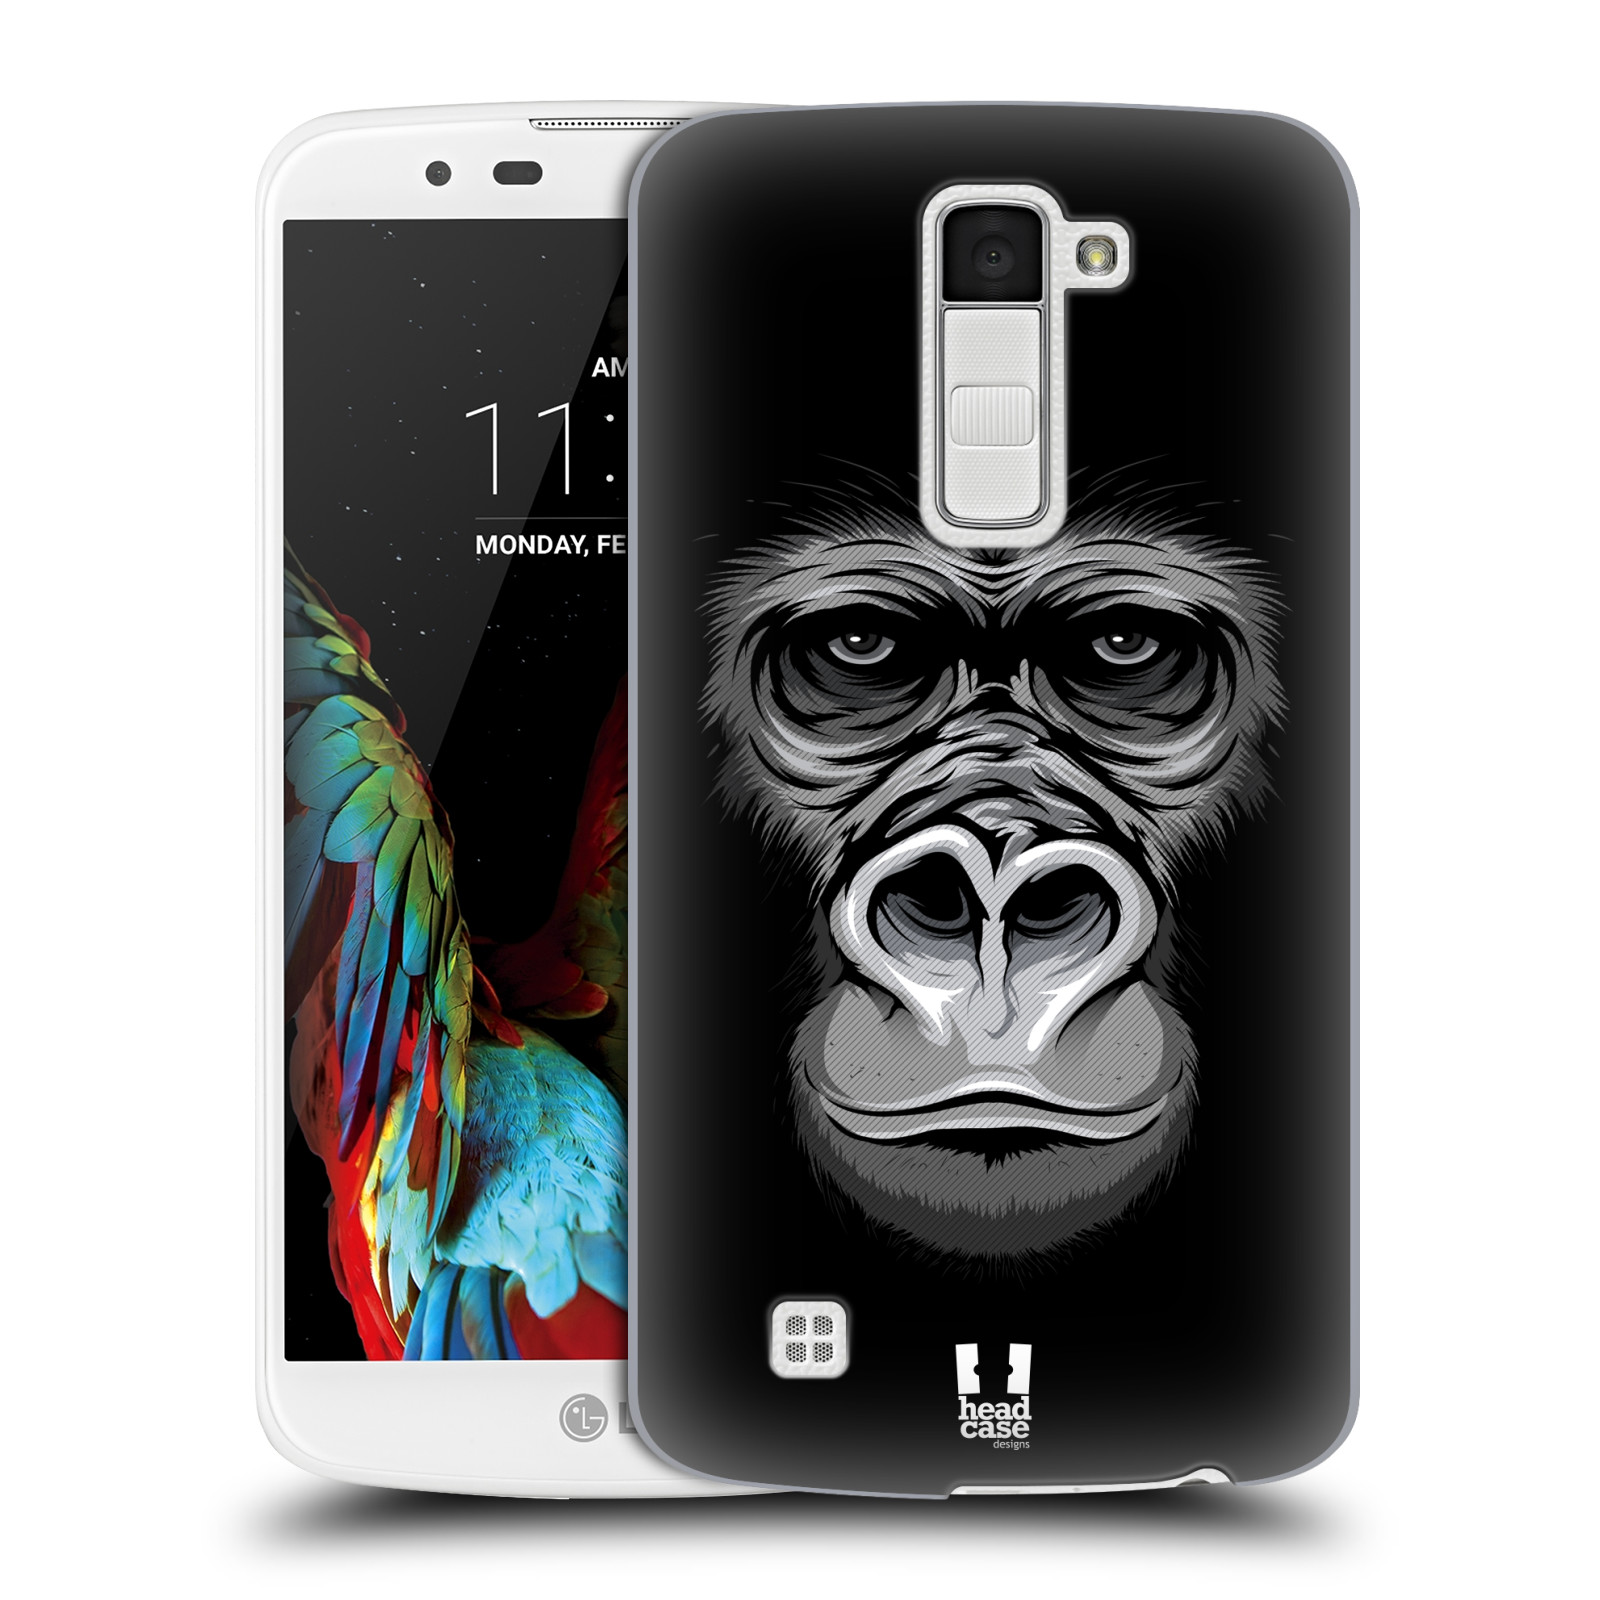 HEAD CASE plastový obal na mobil LG K10 vzor Zvíře kreslená tvář 2 gorila